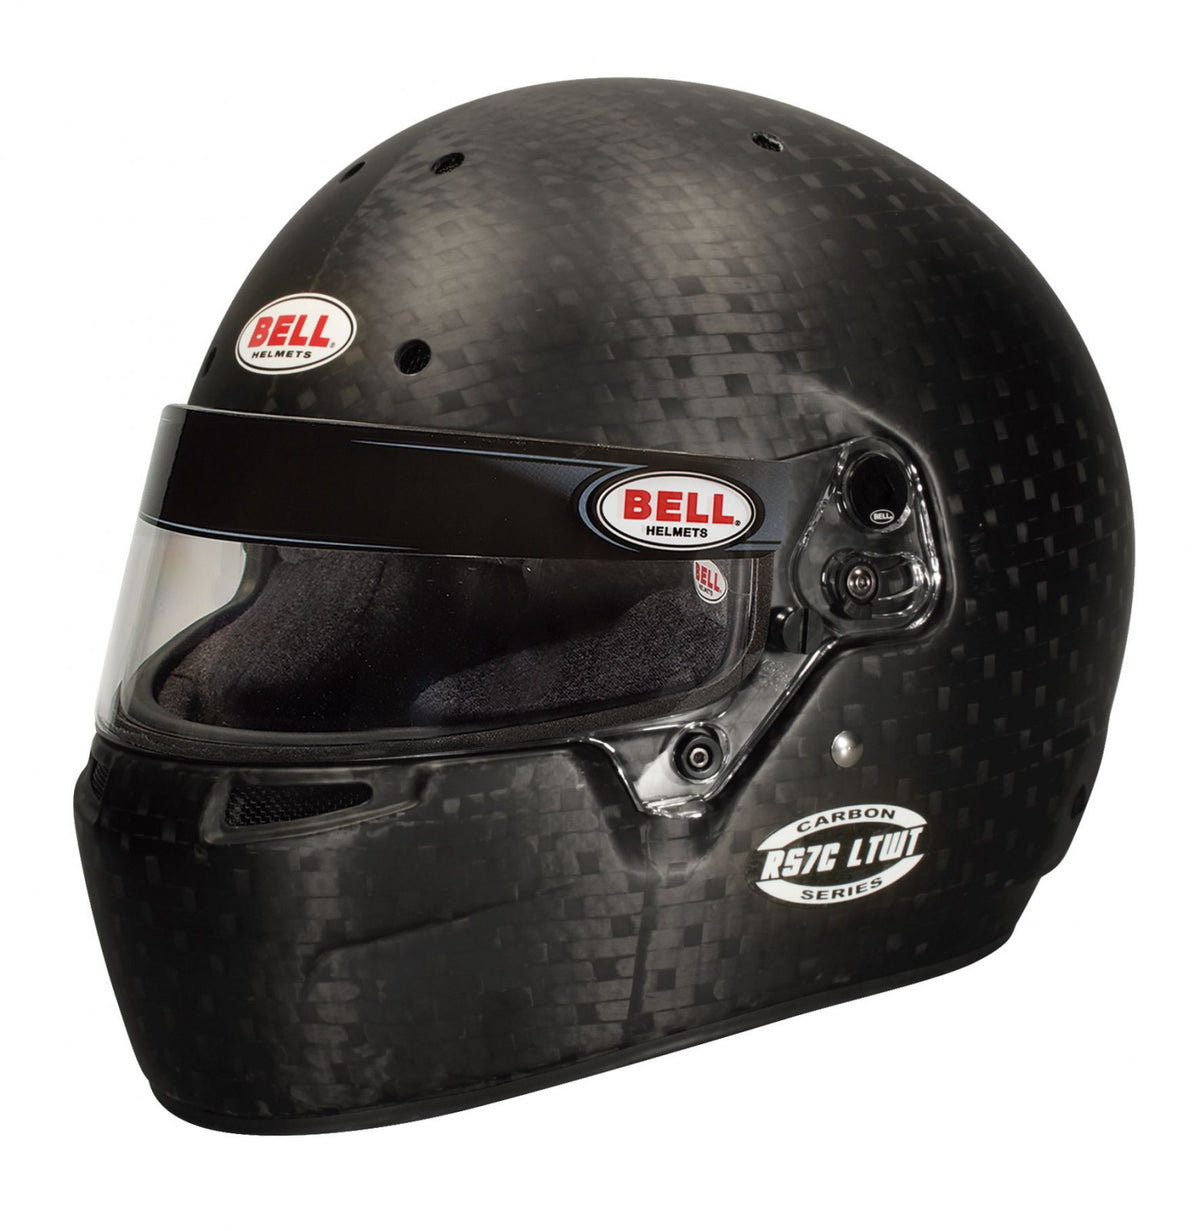 Bell Racing RS7C LTWT Helmet 7 1/4 (58 cm)